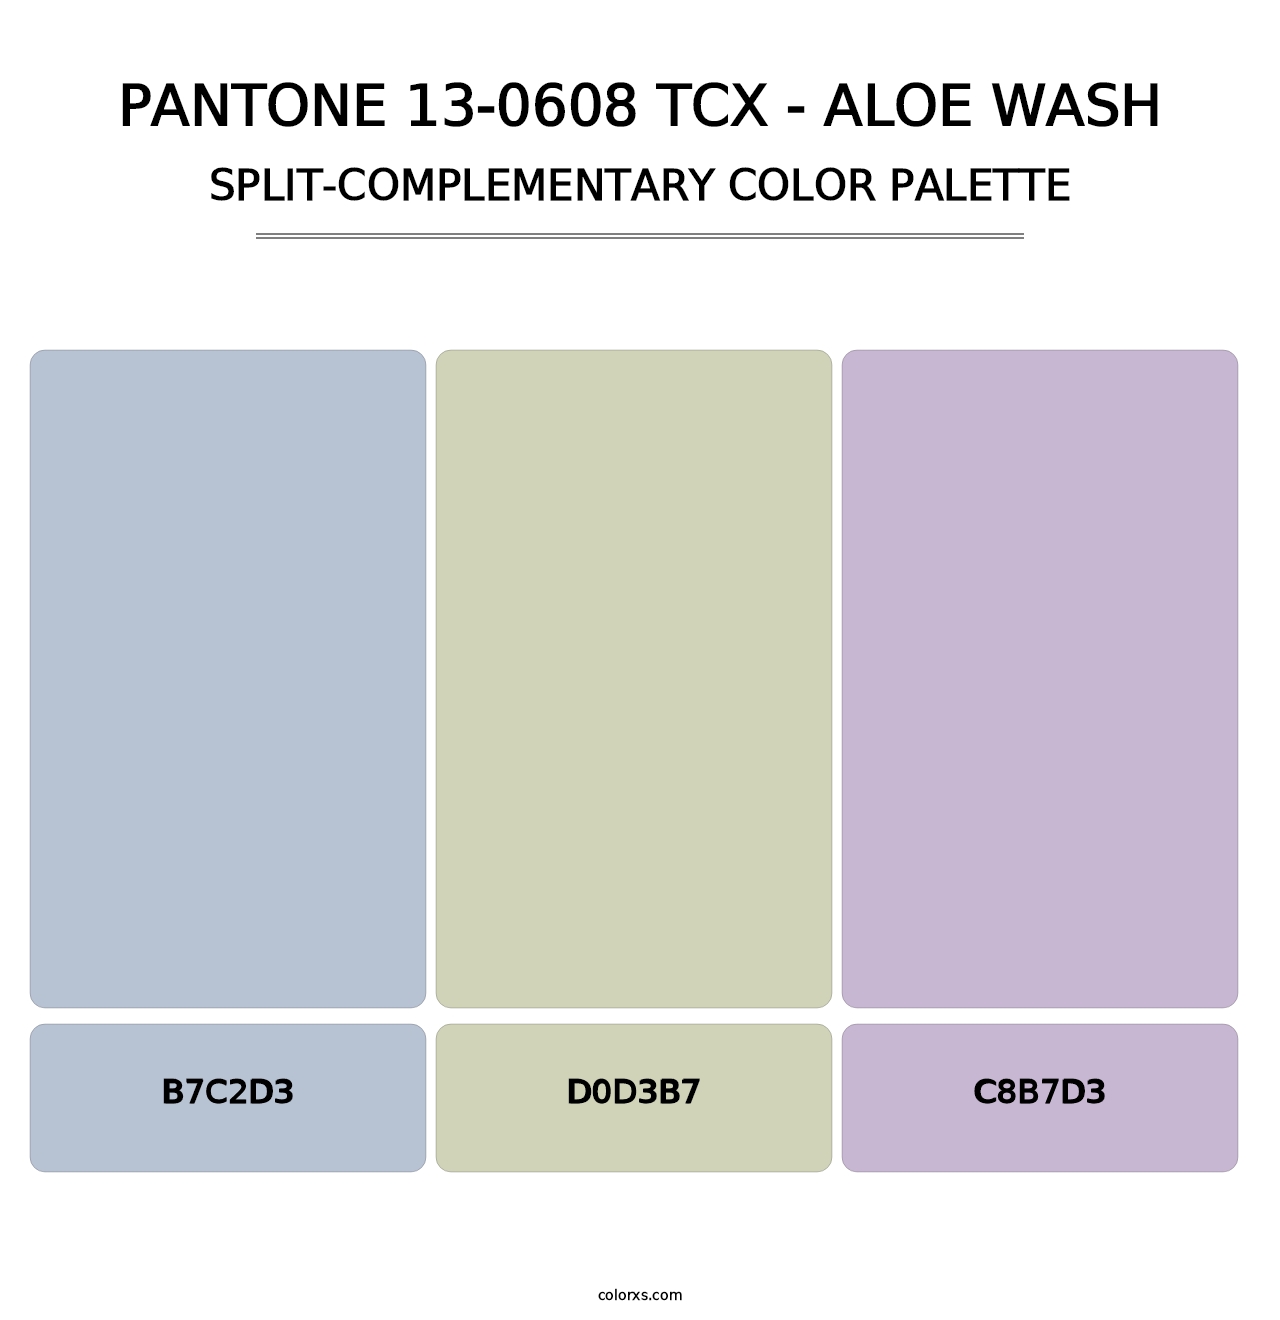 PANTONE 13-0608 TCX - Aloe Wash - Split-Complementary Color Palette